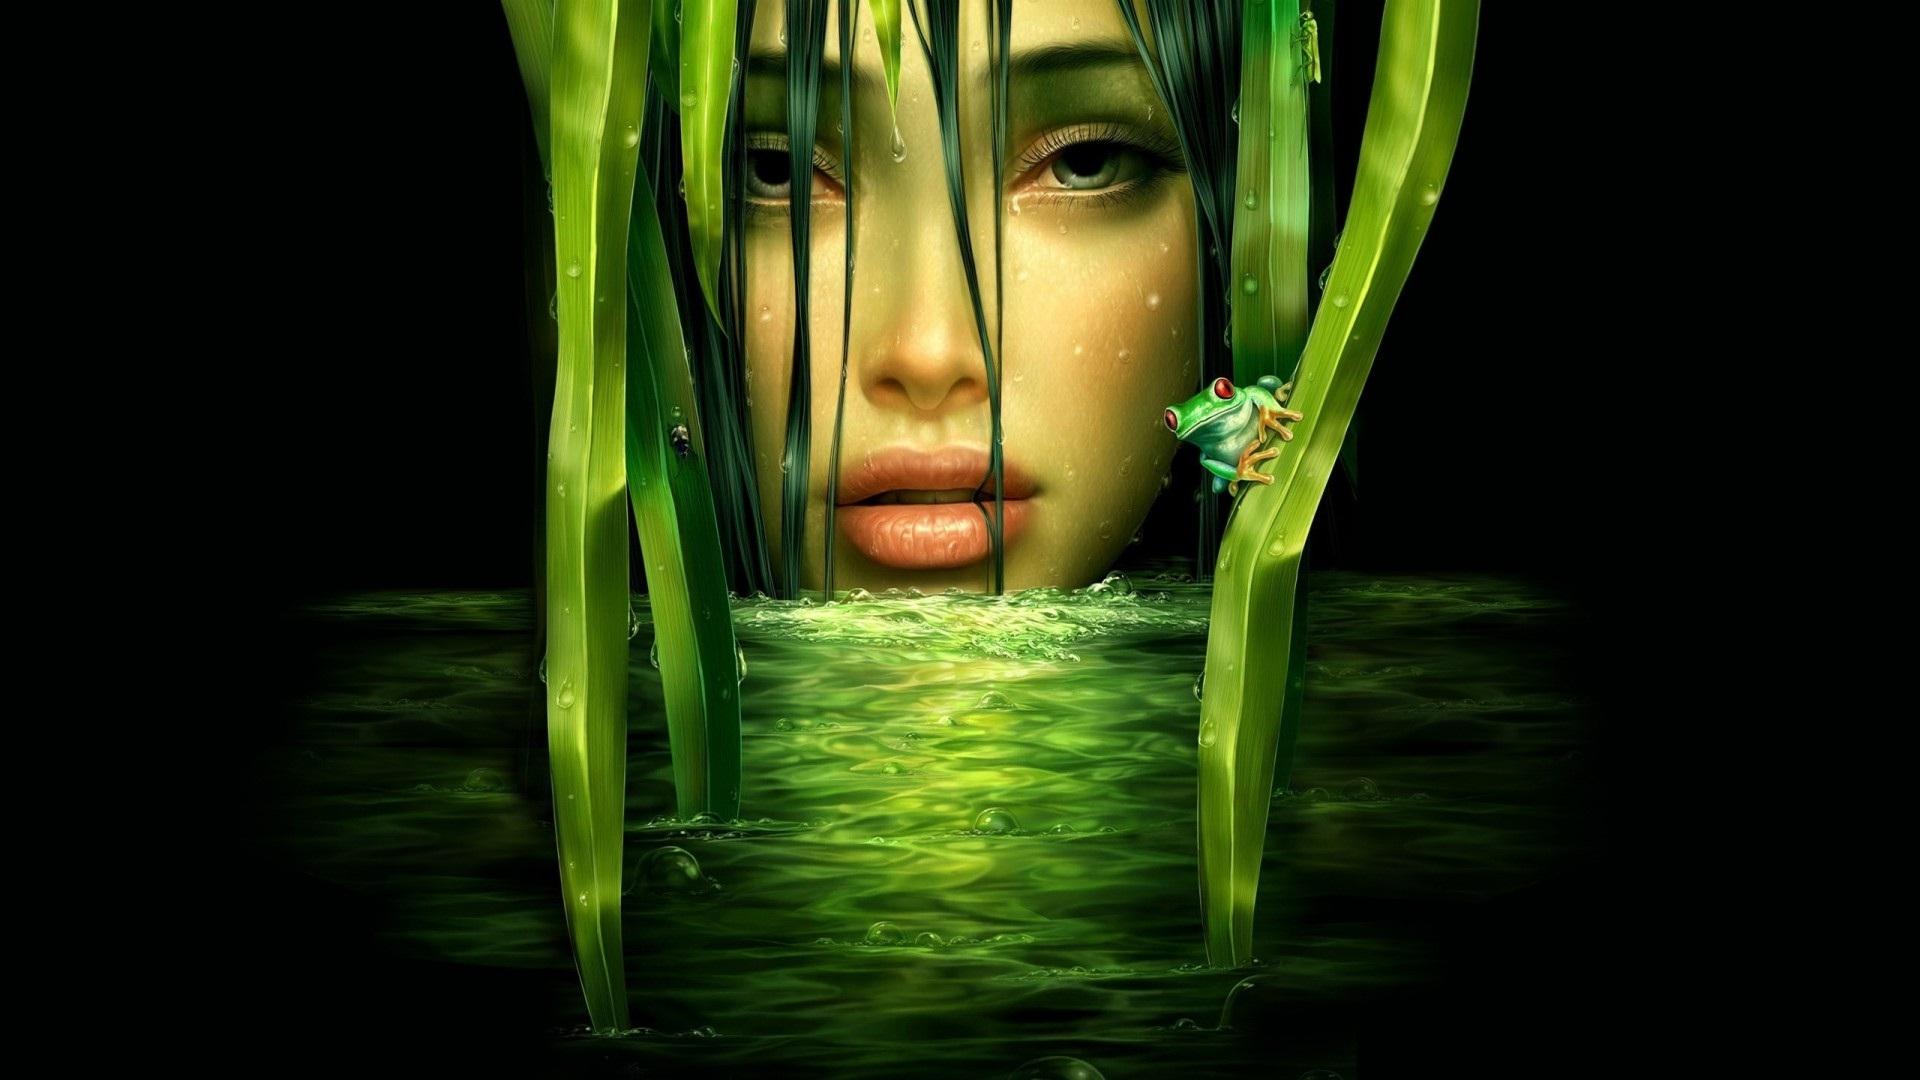 Green water lady 3D wallpaper. HD Wallpaper Rocks